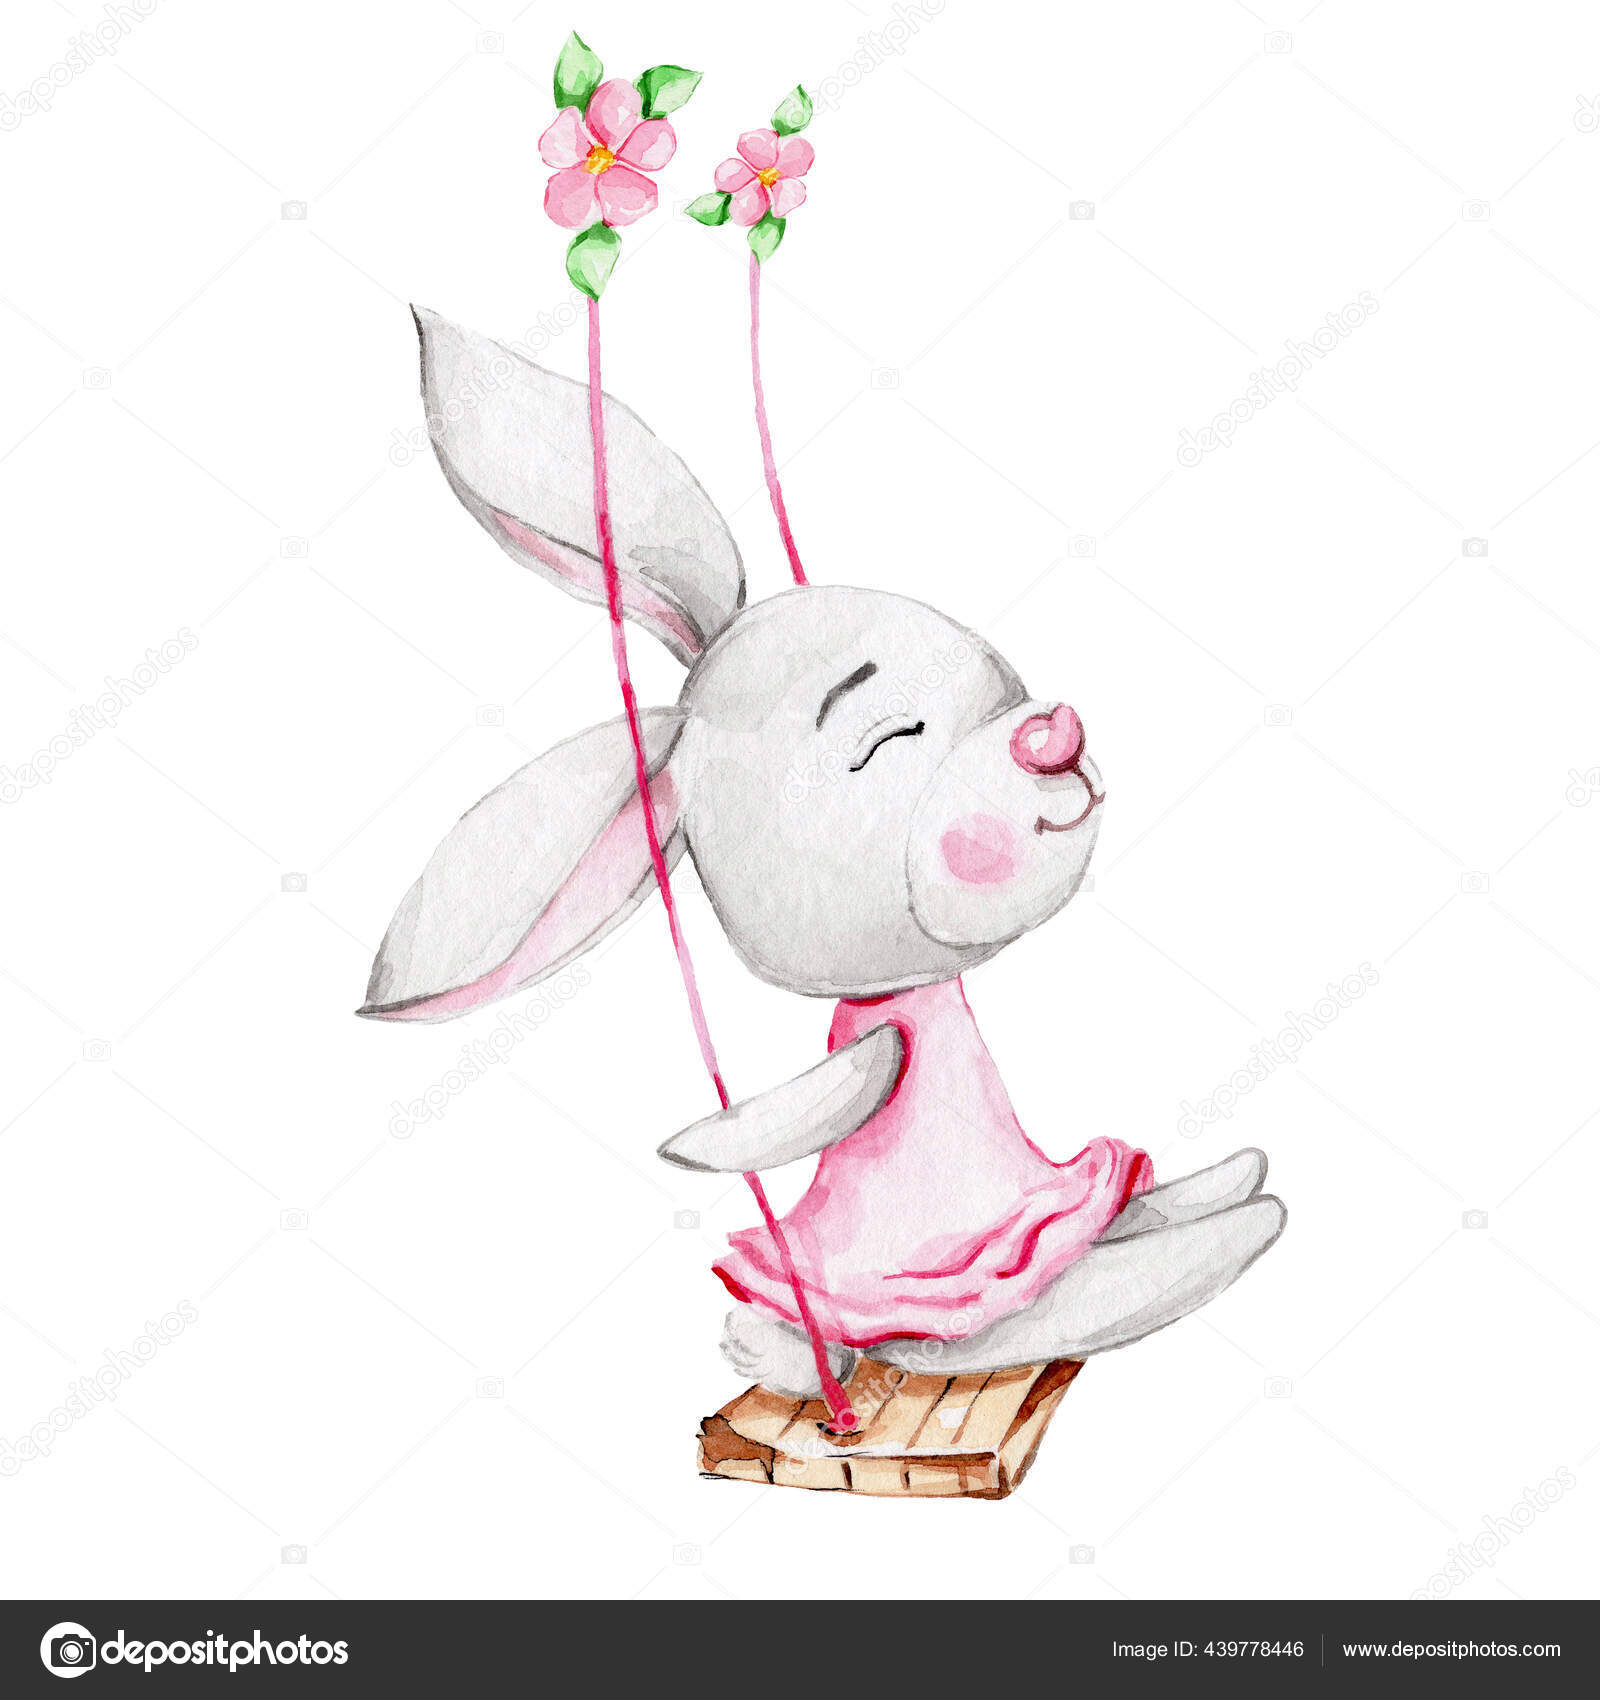 Arrullo bebé verano Emily, diseño en color rosa con conejitos blancos.